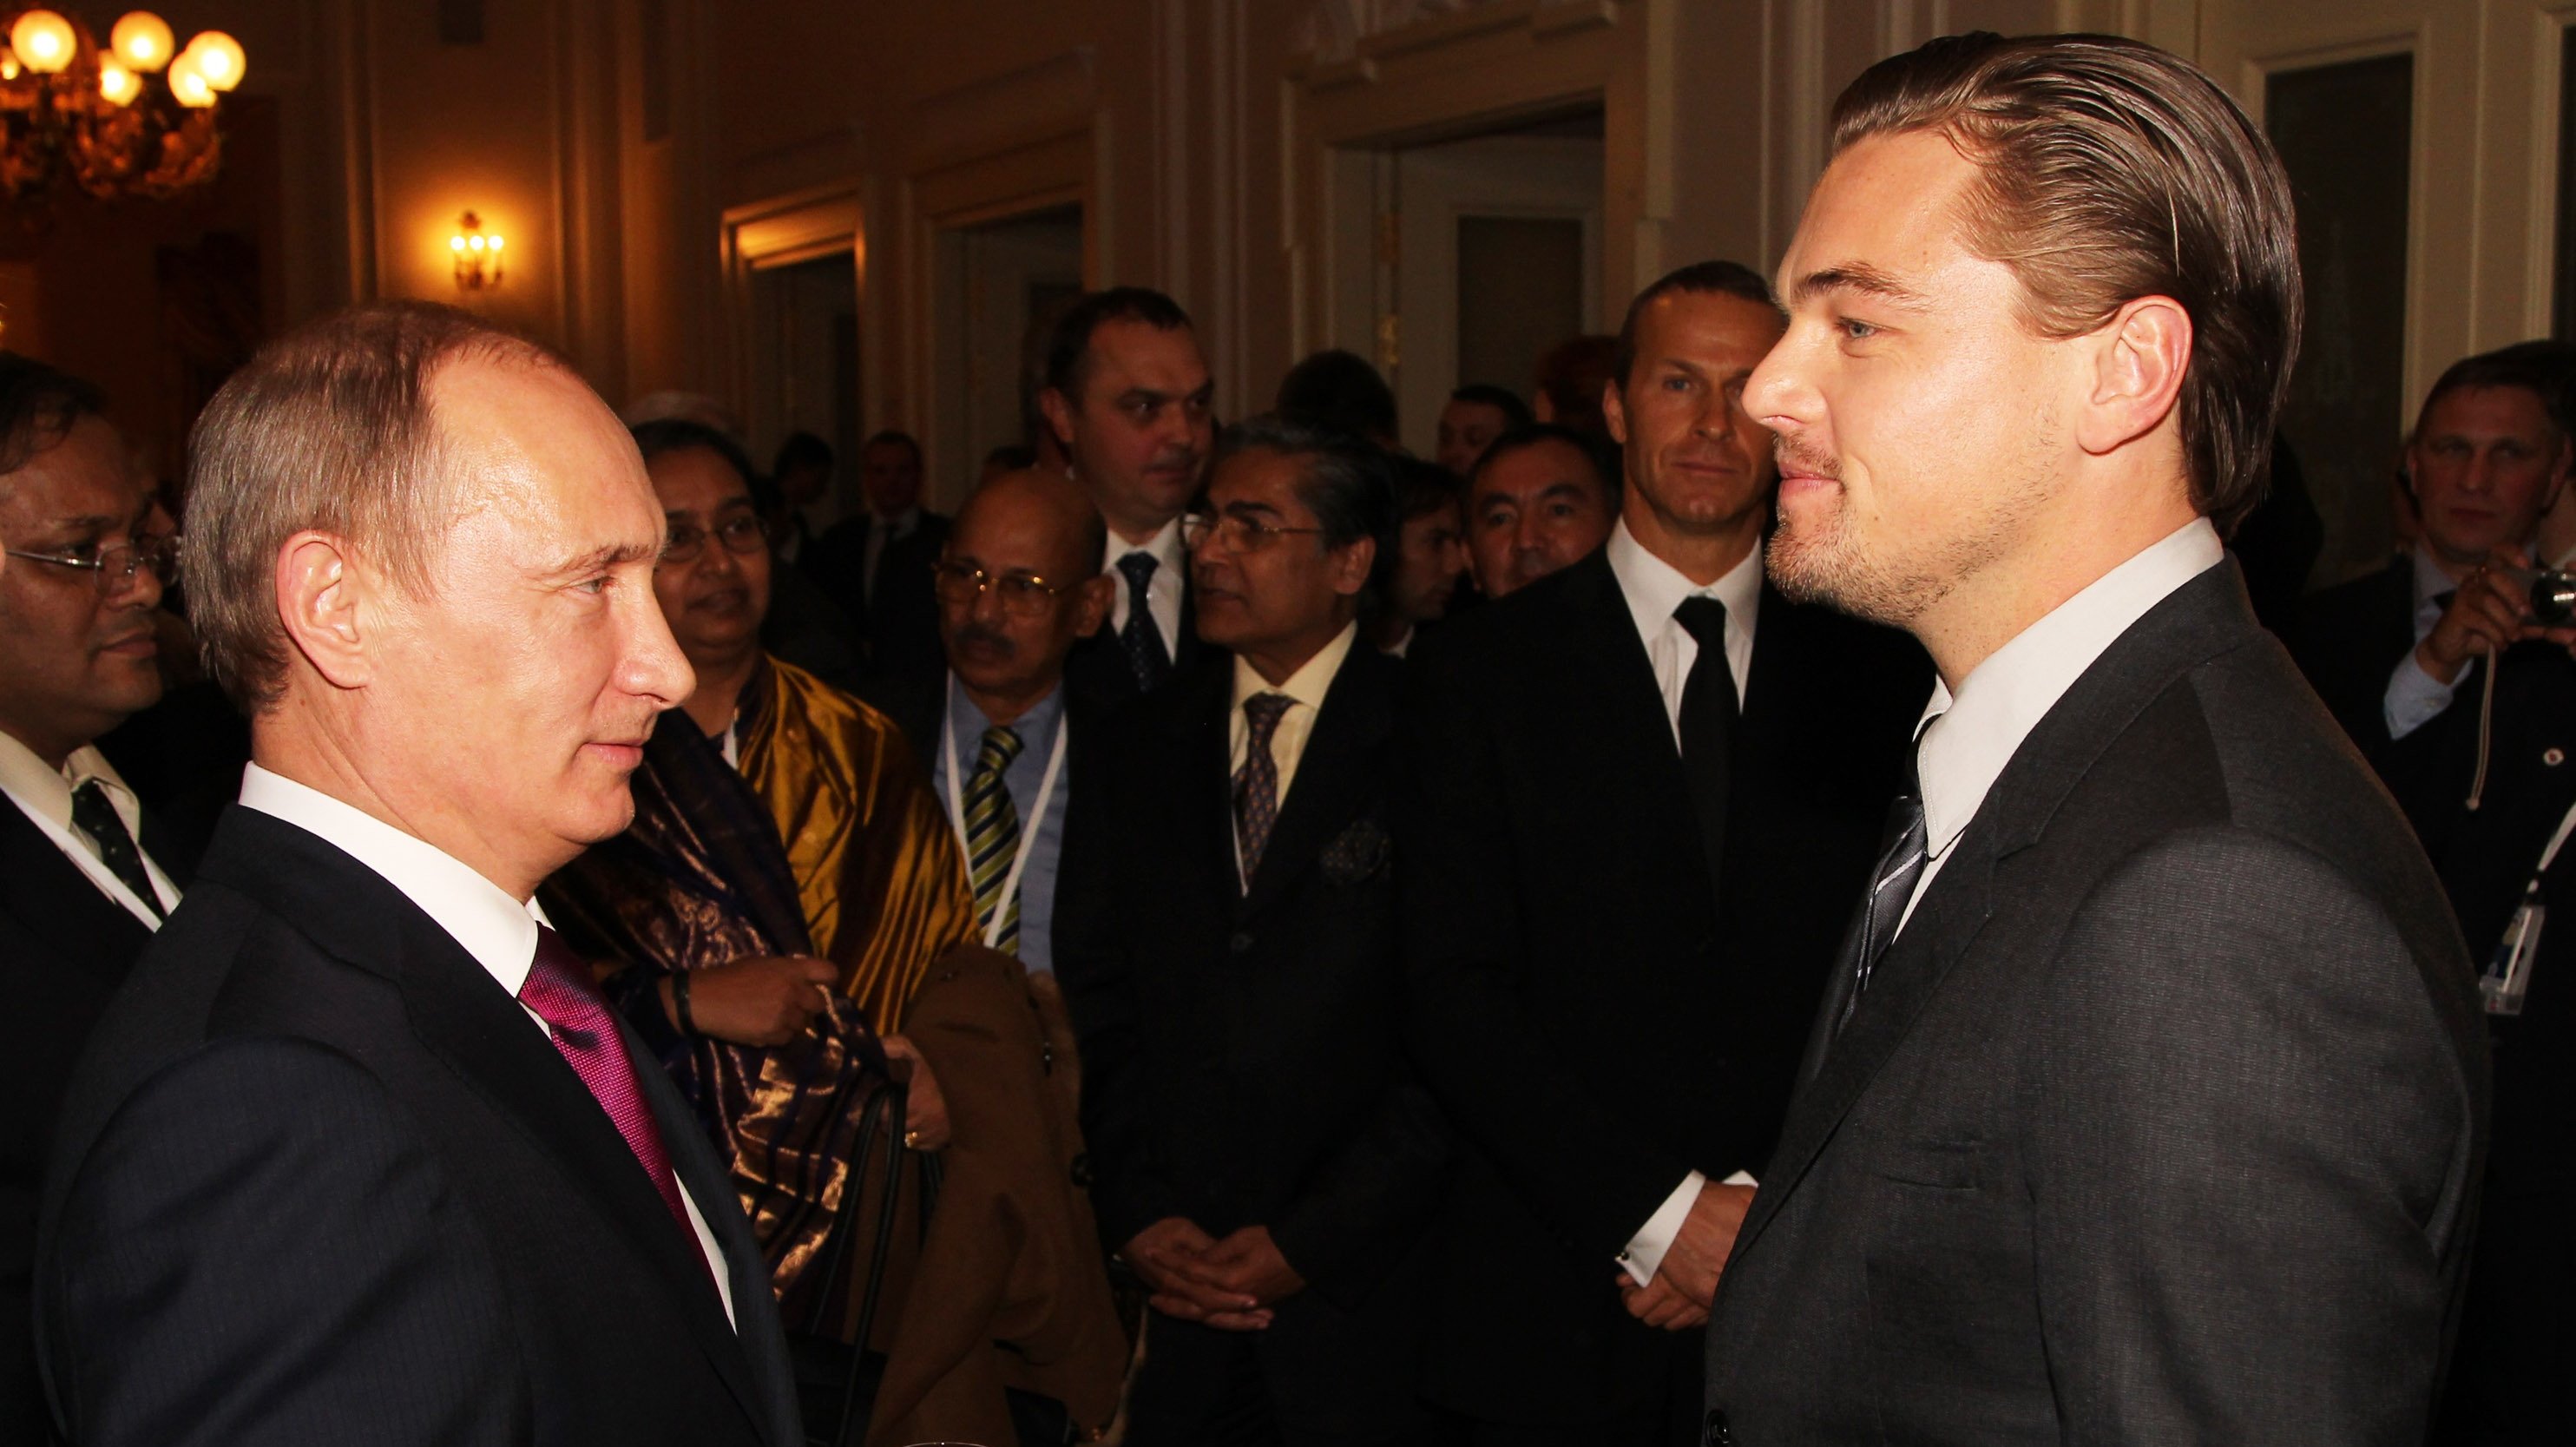 Leonardo DiCaprio com o então primeiro-ministro da Rússia, Vladimir Putin, durante uma conferência realizada em S: Petersburg, em 2010, dedicada ao Tigre Siberiano